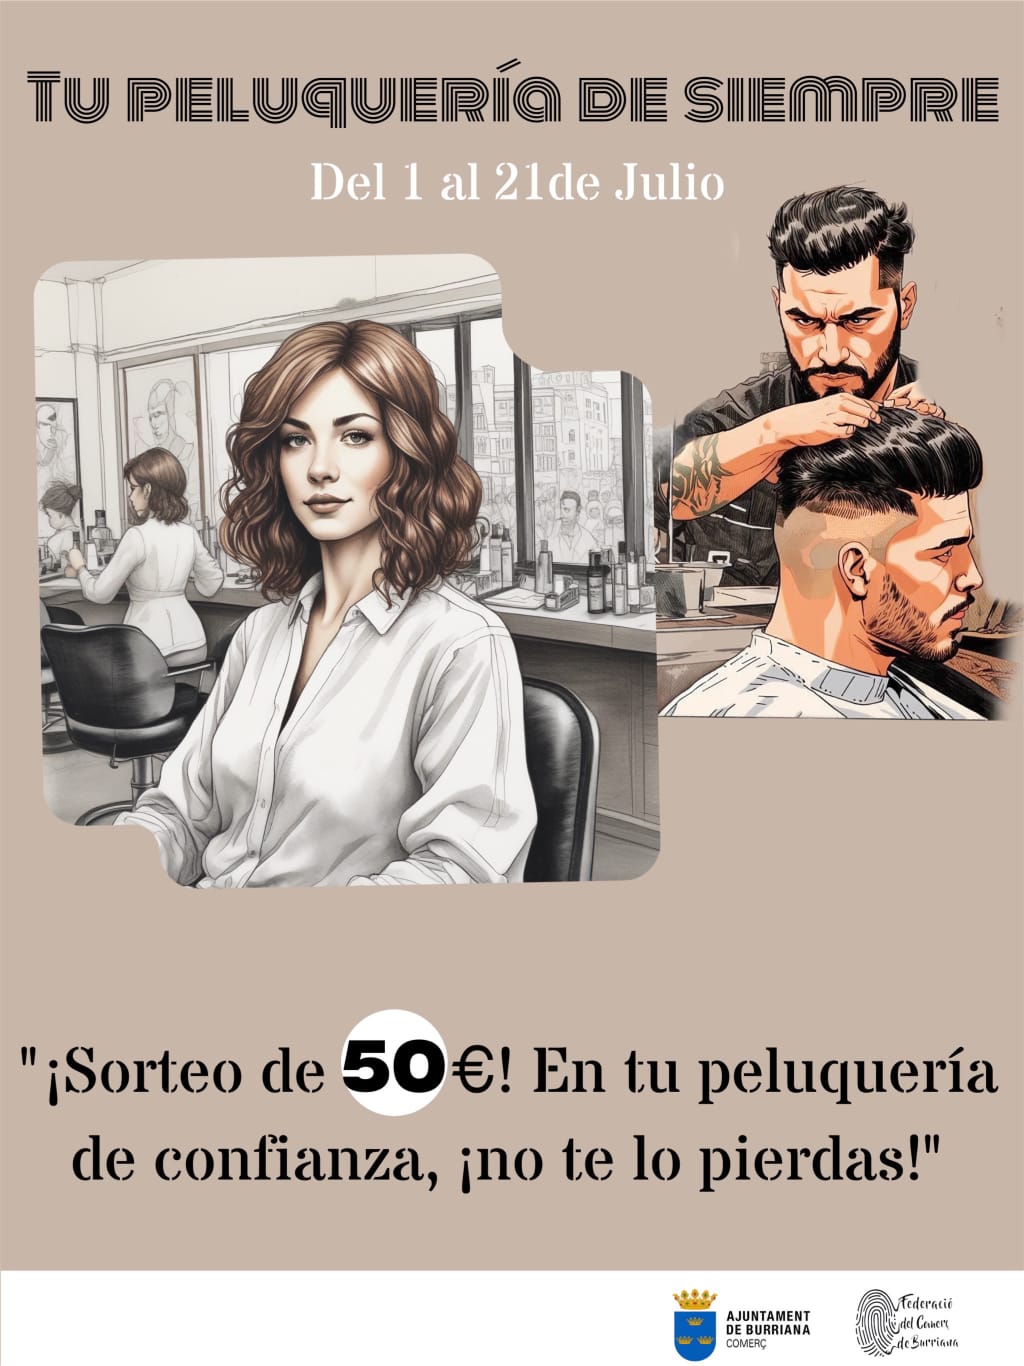 La Federació del Comerç de Burriana presenta la Campanya “Tu peluquería de siempre”